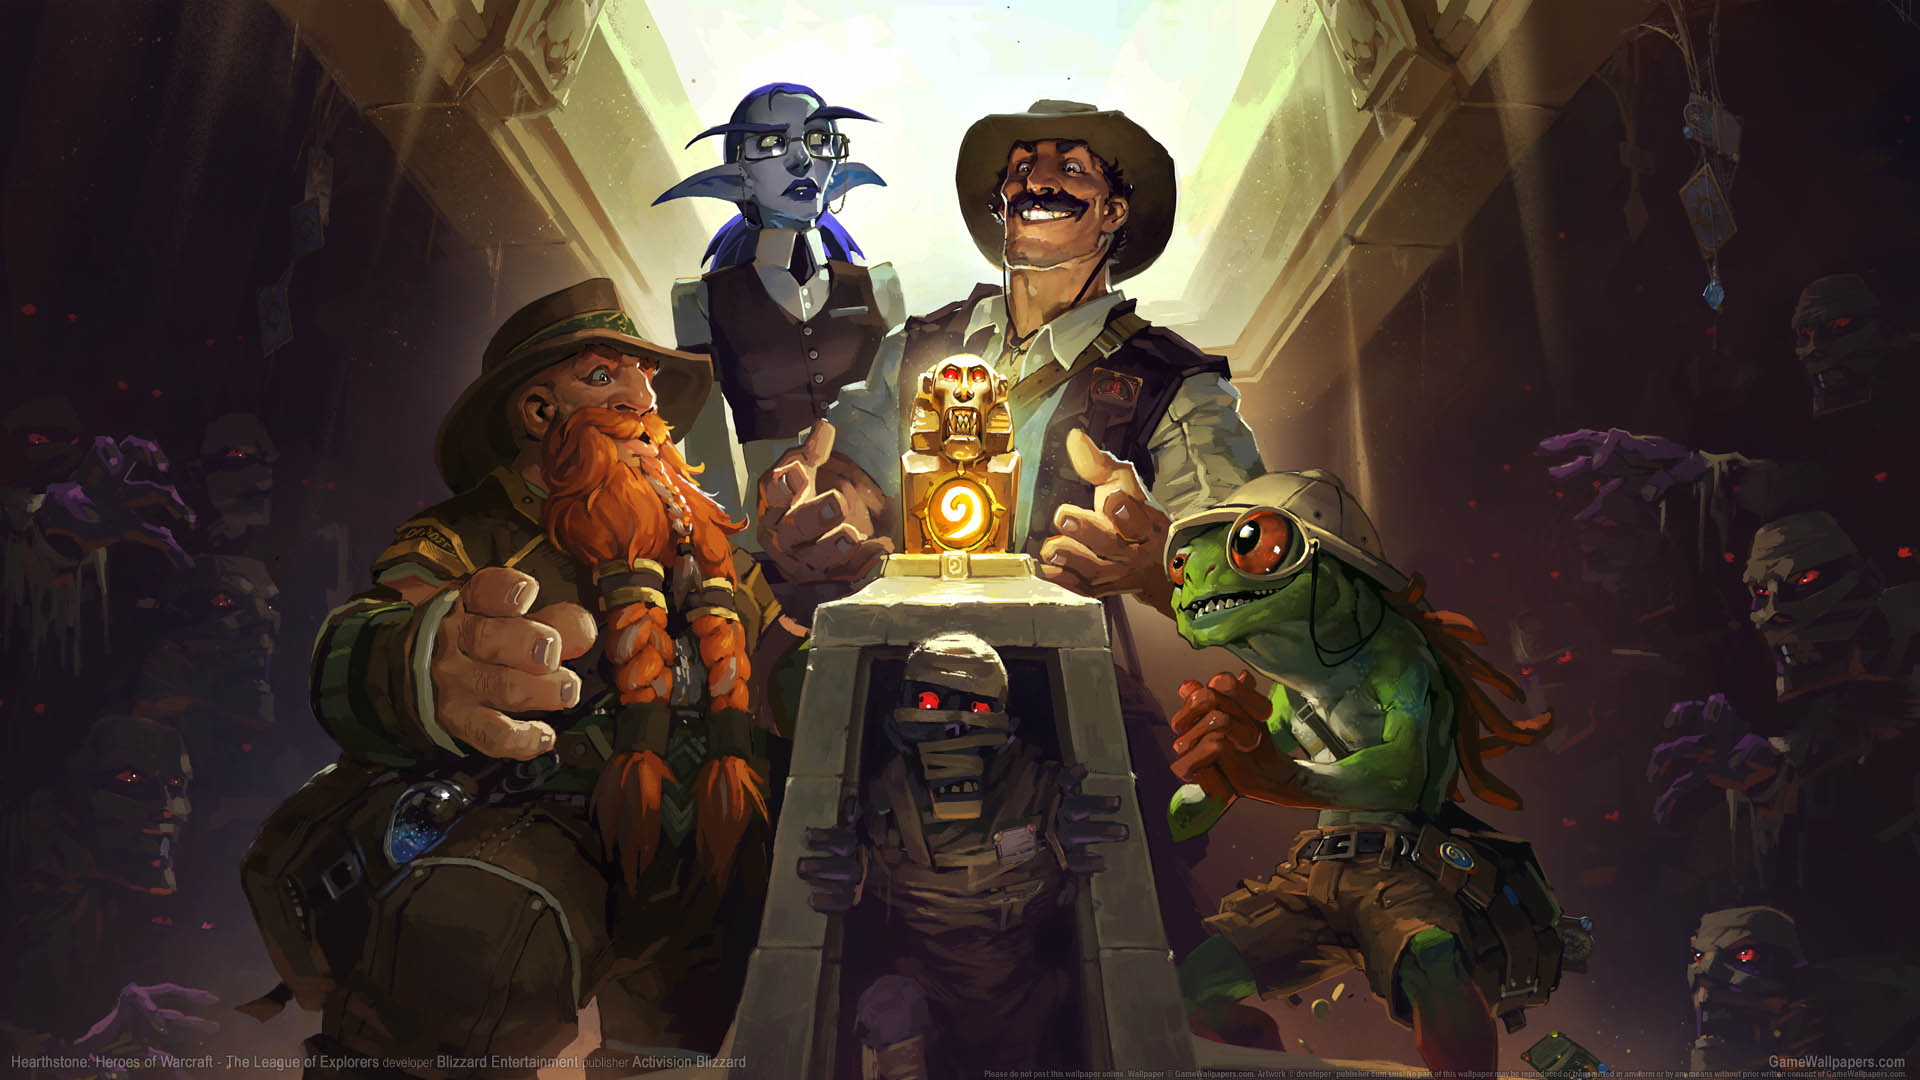 Hearthstone: Heroes of Warcraft - The League of Explorers fondo de escritorio 01 1920x1080